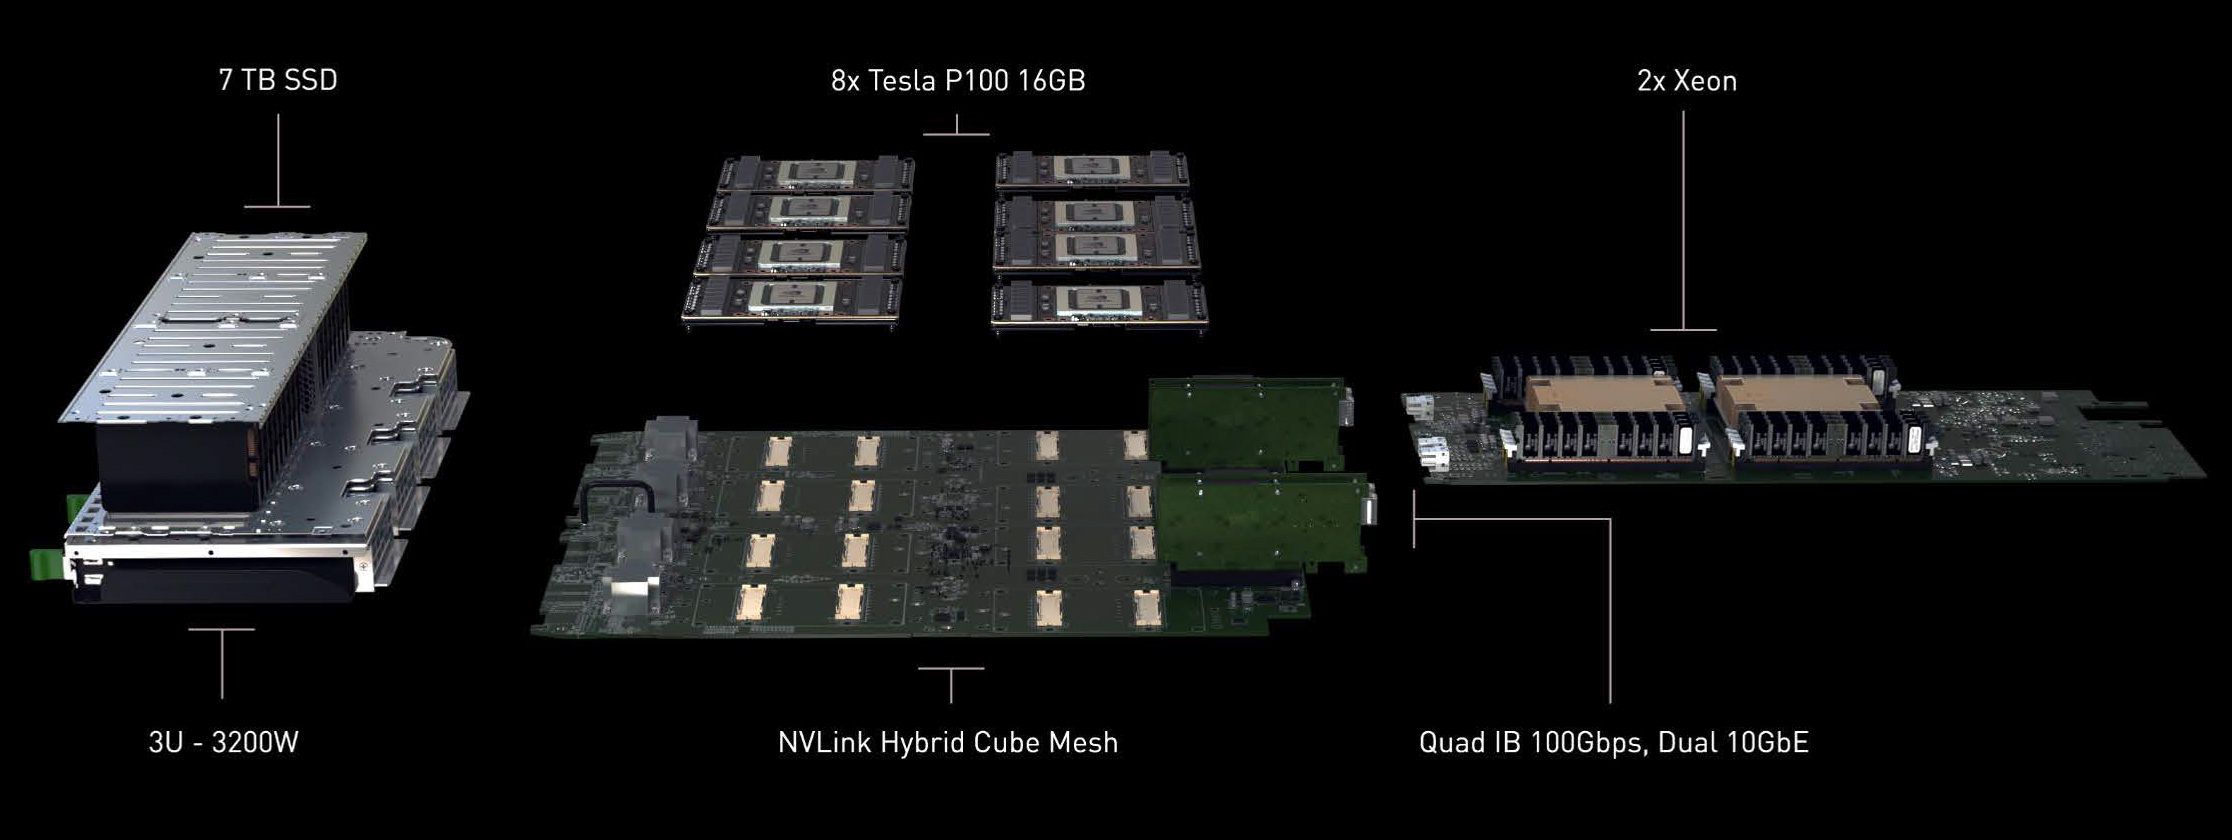 Nvidia anunciou primeiro supercomputador de “deep learning” do mundo